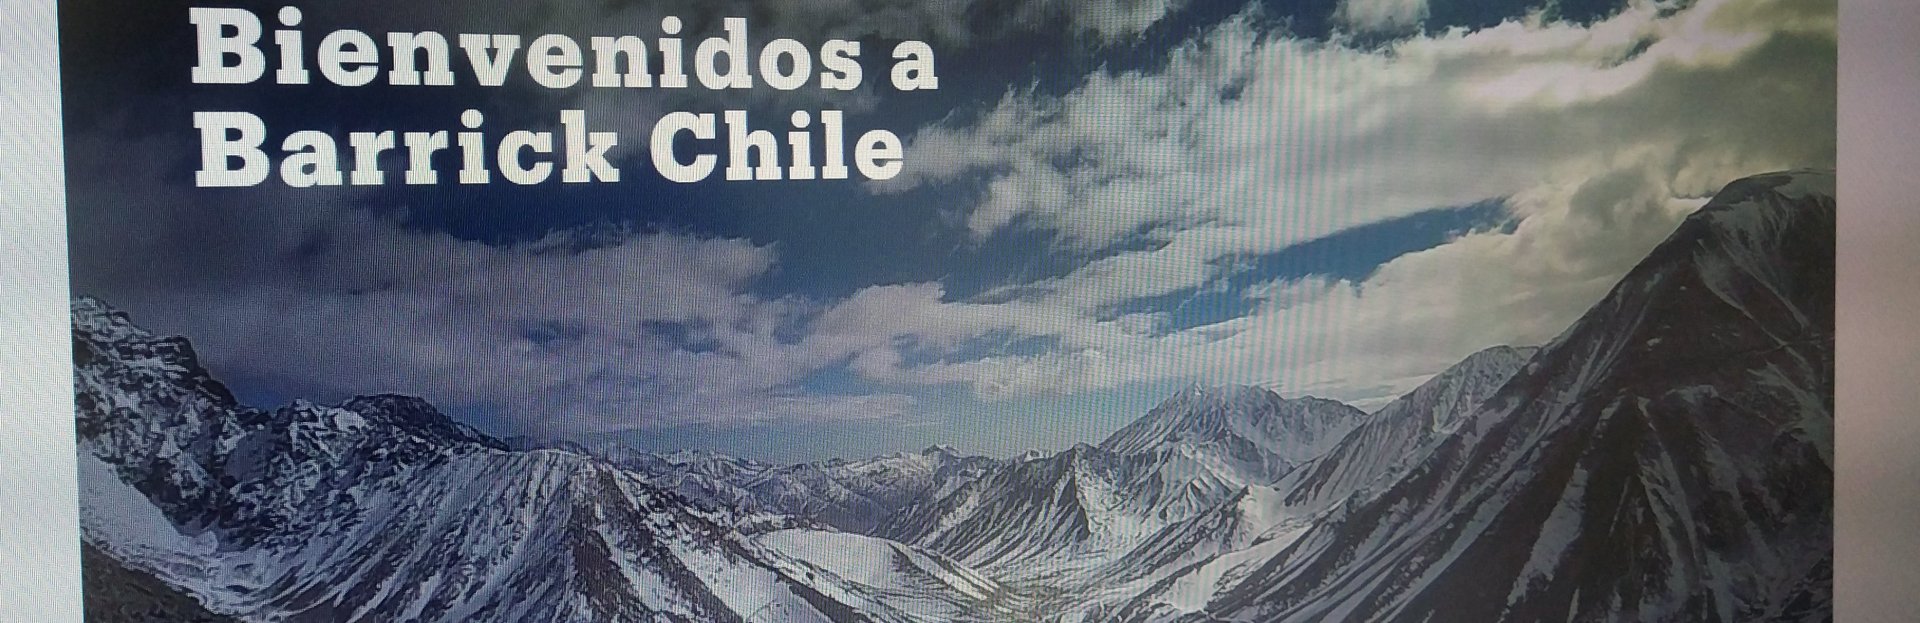 Pantalla mostrando el sitio Barrick Chile